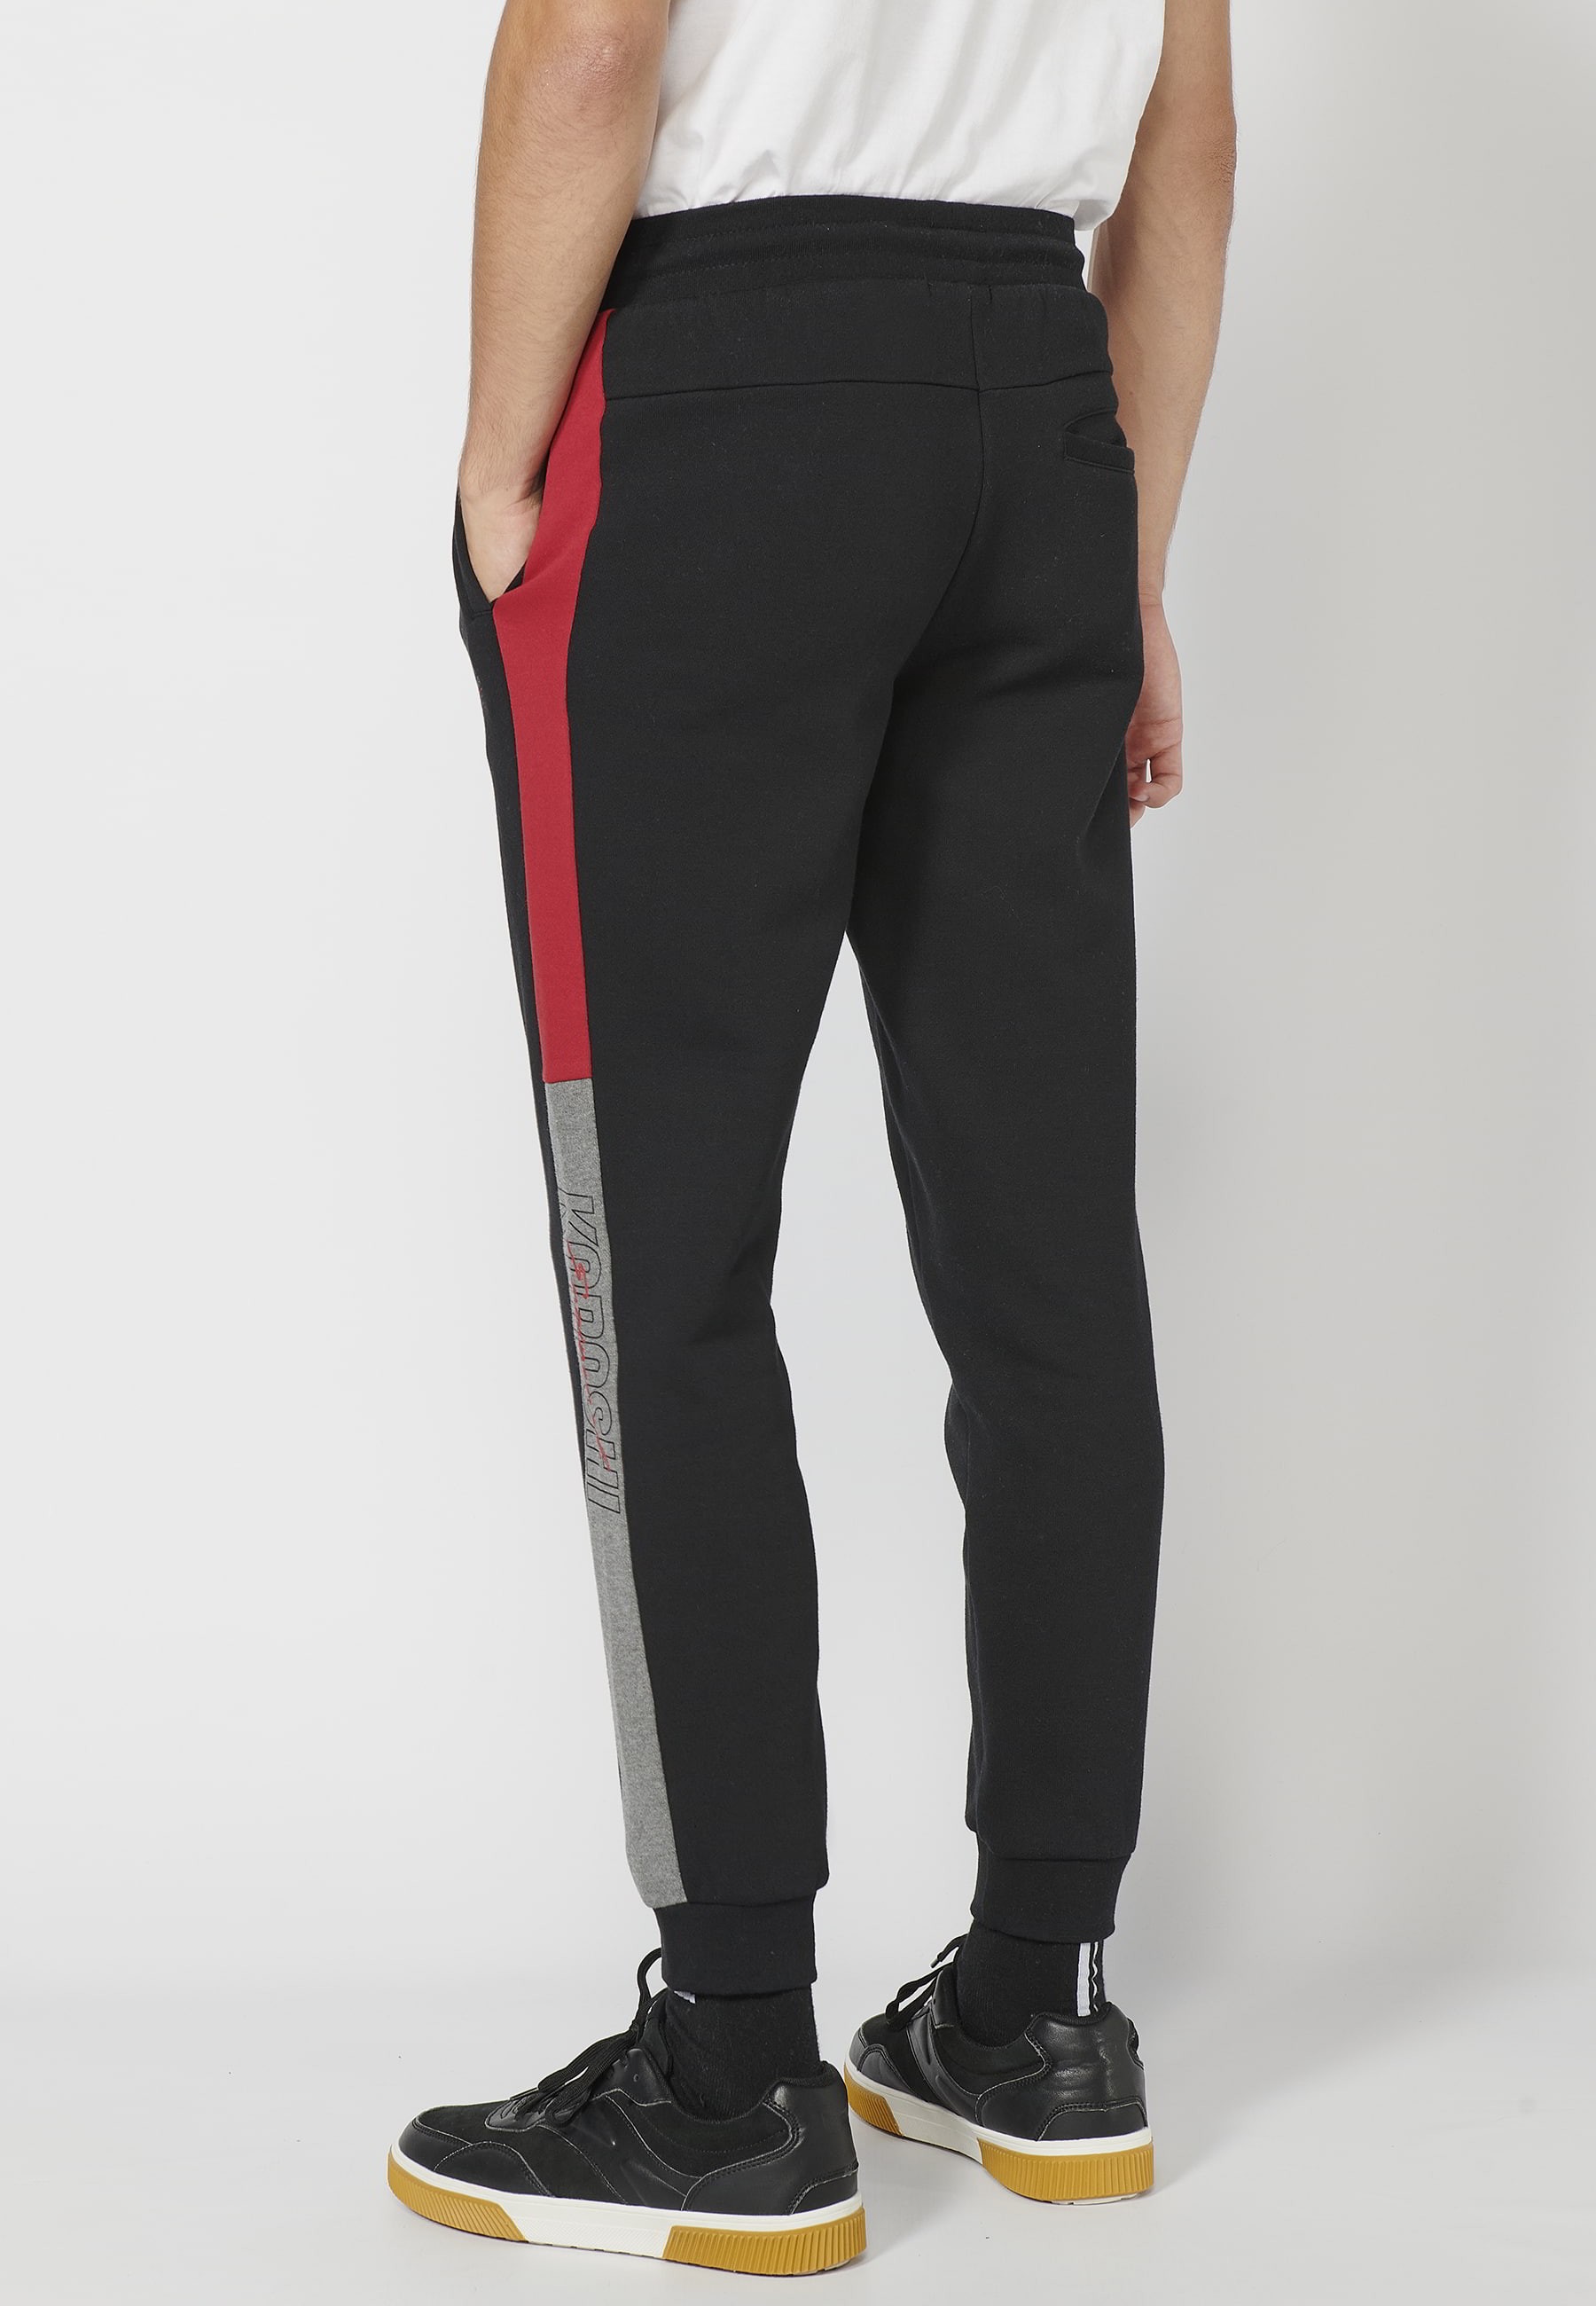 Lange Jogginghose mit verstellbarem elastischem Bund, Seitendetail, schwarze Farbe für Herren